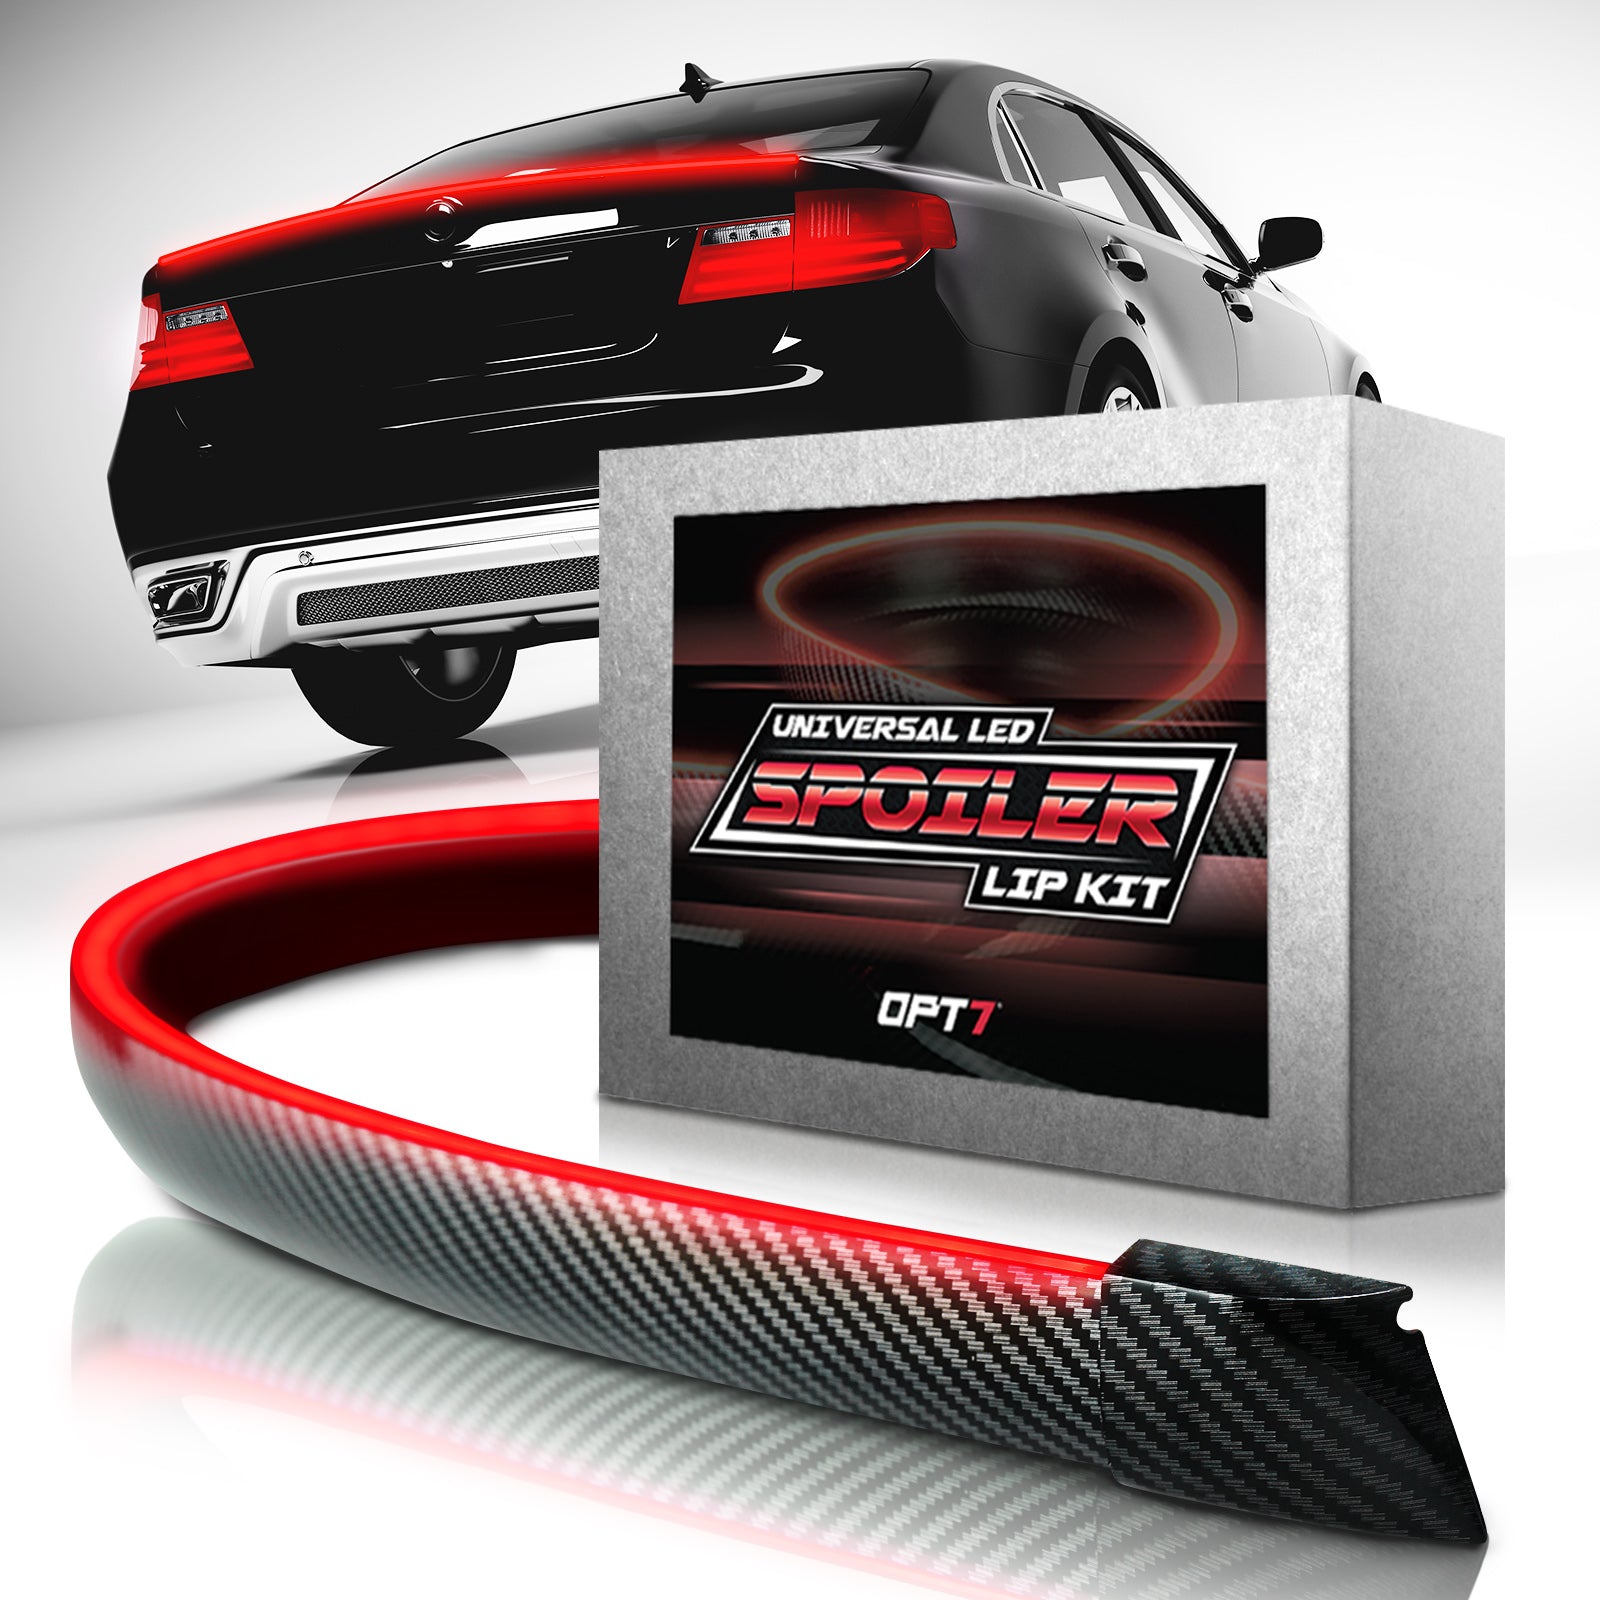 OPT7 Universal LED Rear Spoiler Lip Kit (3.9ft) for Car Trunk Exterior –  OPT7 Lighting Inc